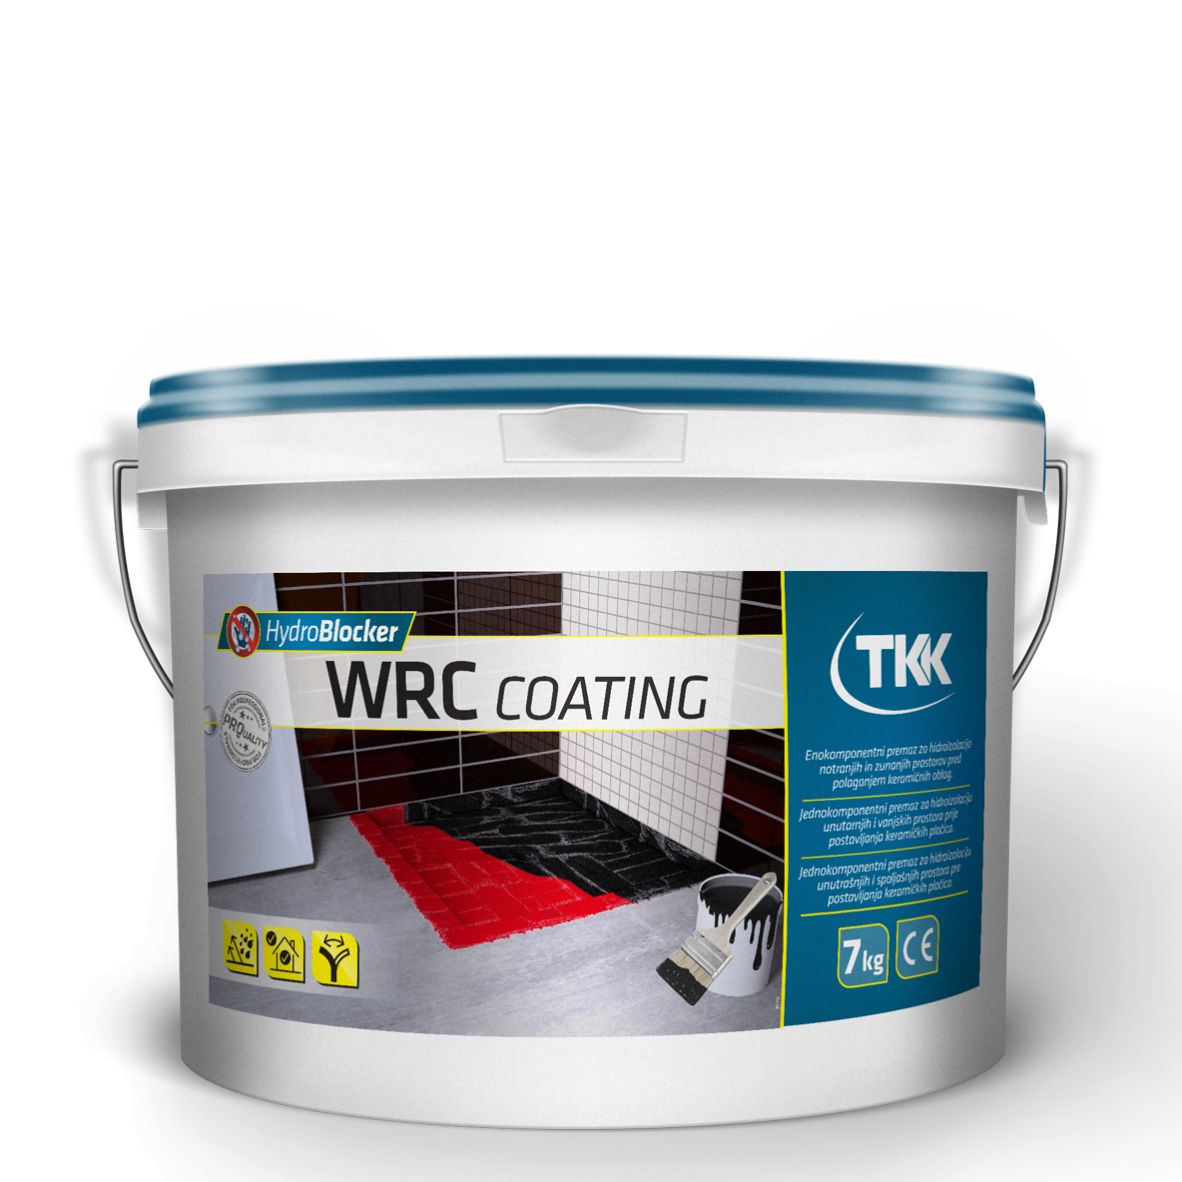 Hydroblocker wrc coating